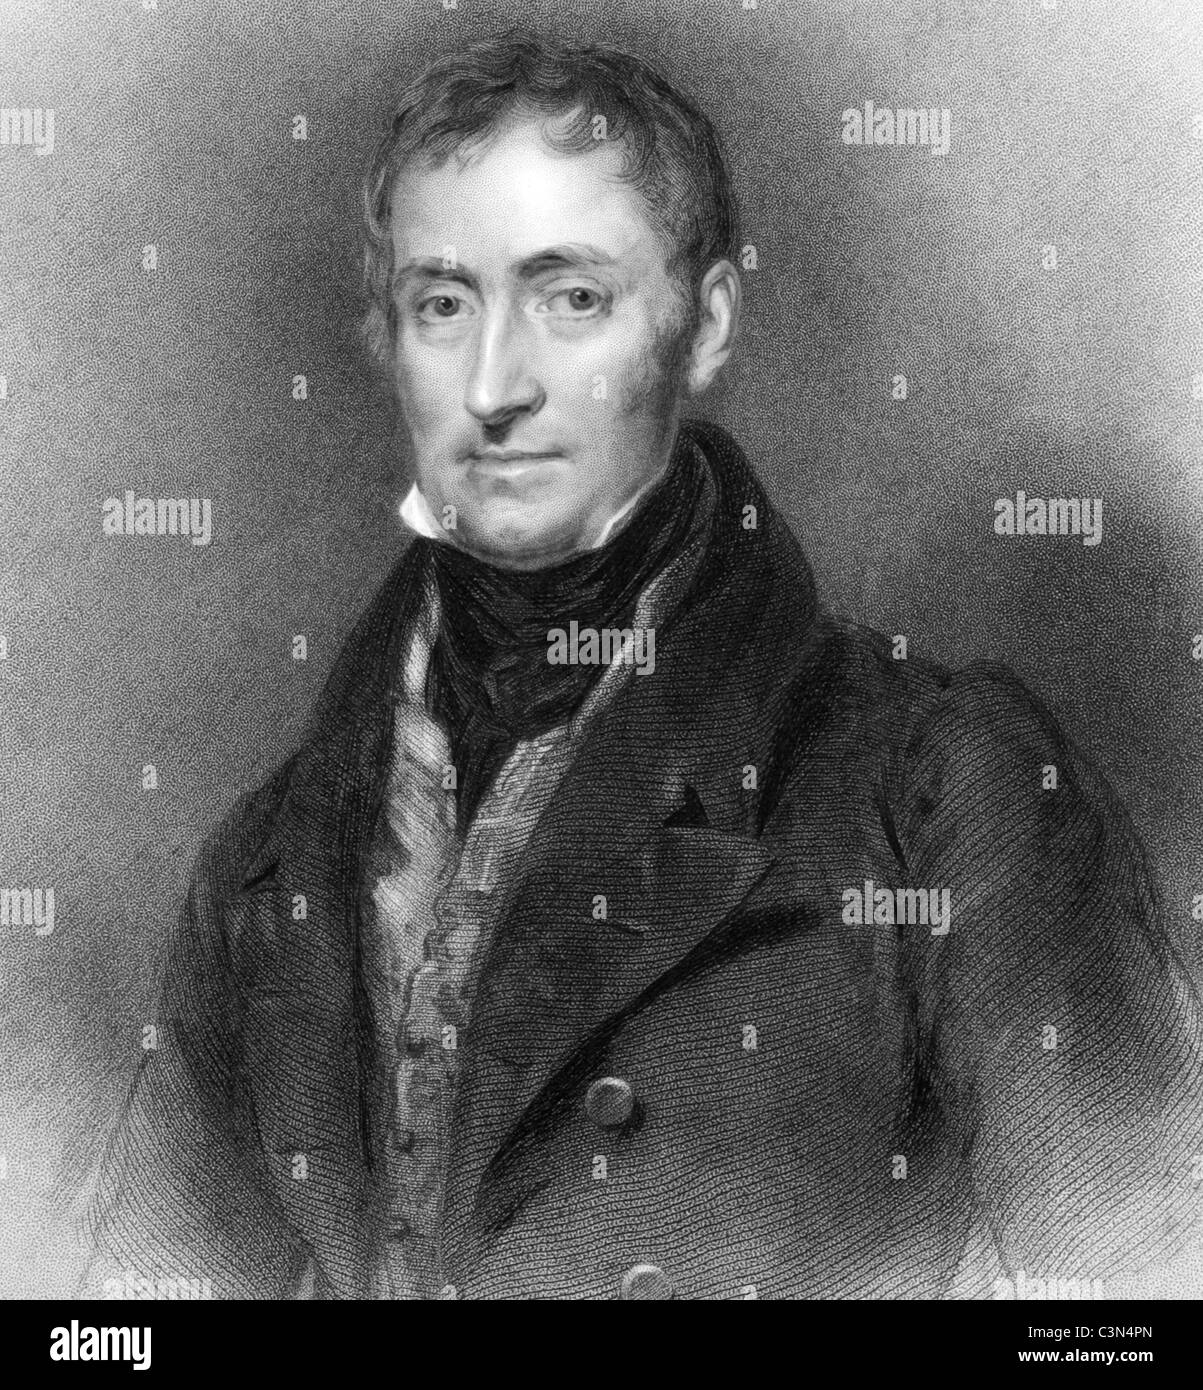 James Archibald Stuart-Wortley-Mackenzie,1er baron Wharncliffe (1776-1845) gravure sur de 1836. Soldat britannique et homme politique. Banque D'Images